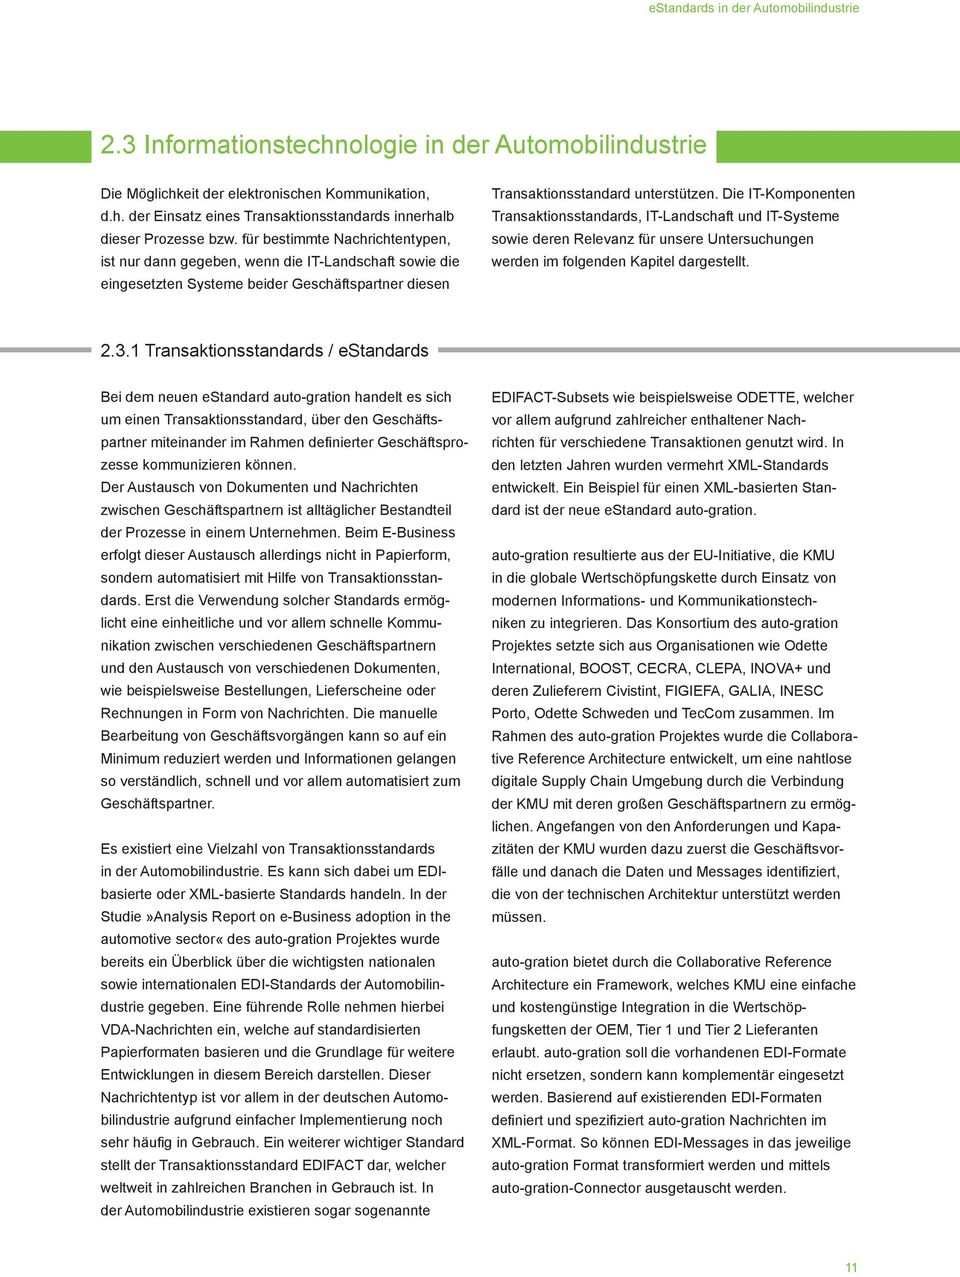 Die IT-Komponenten Transaktionsstandards, IT-Landschaft und IT-Systeme sowie deren Relevanz für unsere Untersuchungen werden im folgenden Kapitel dargestellt. 2.3.